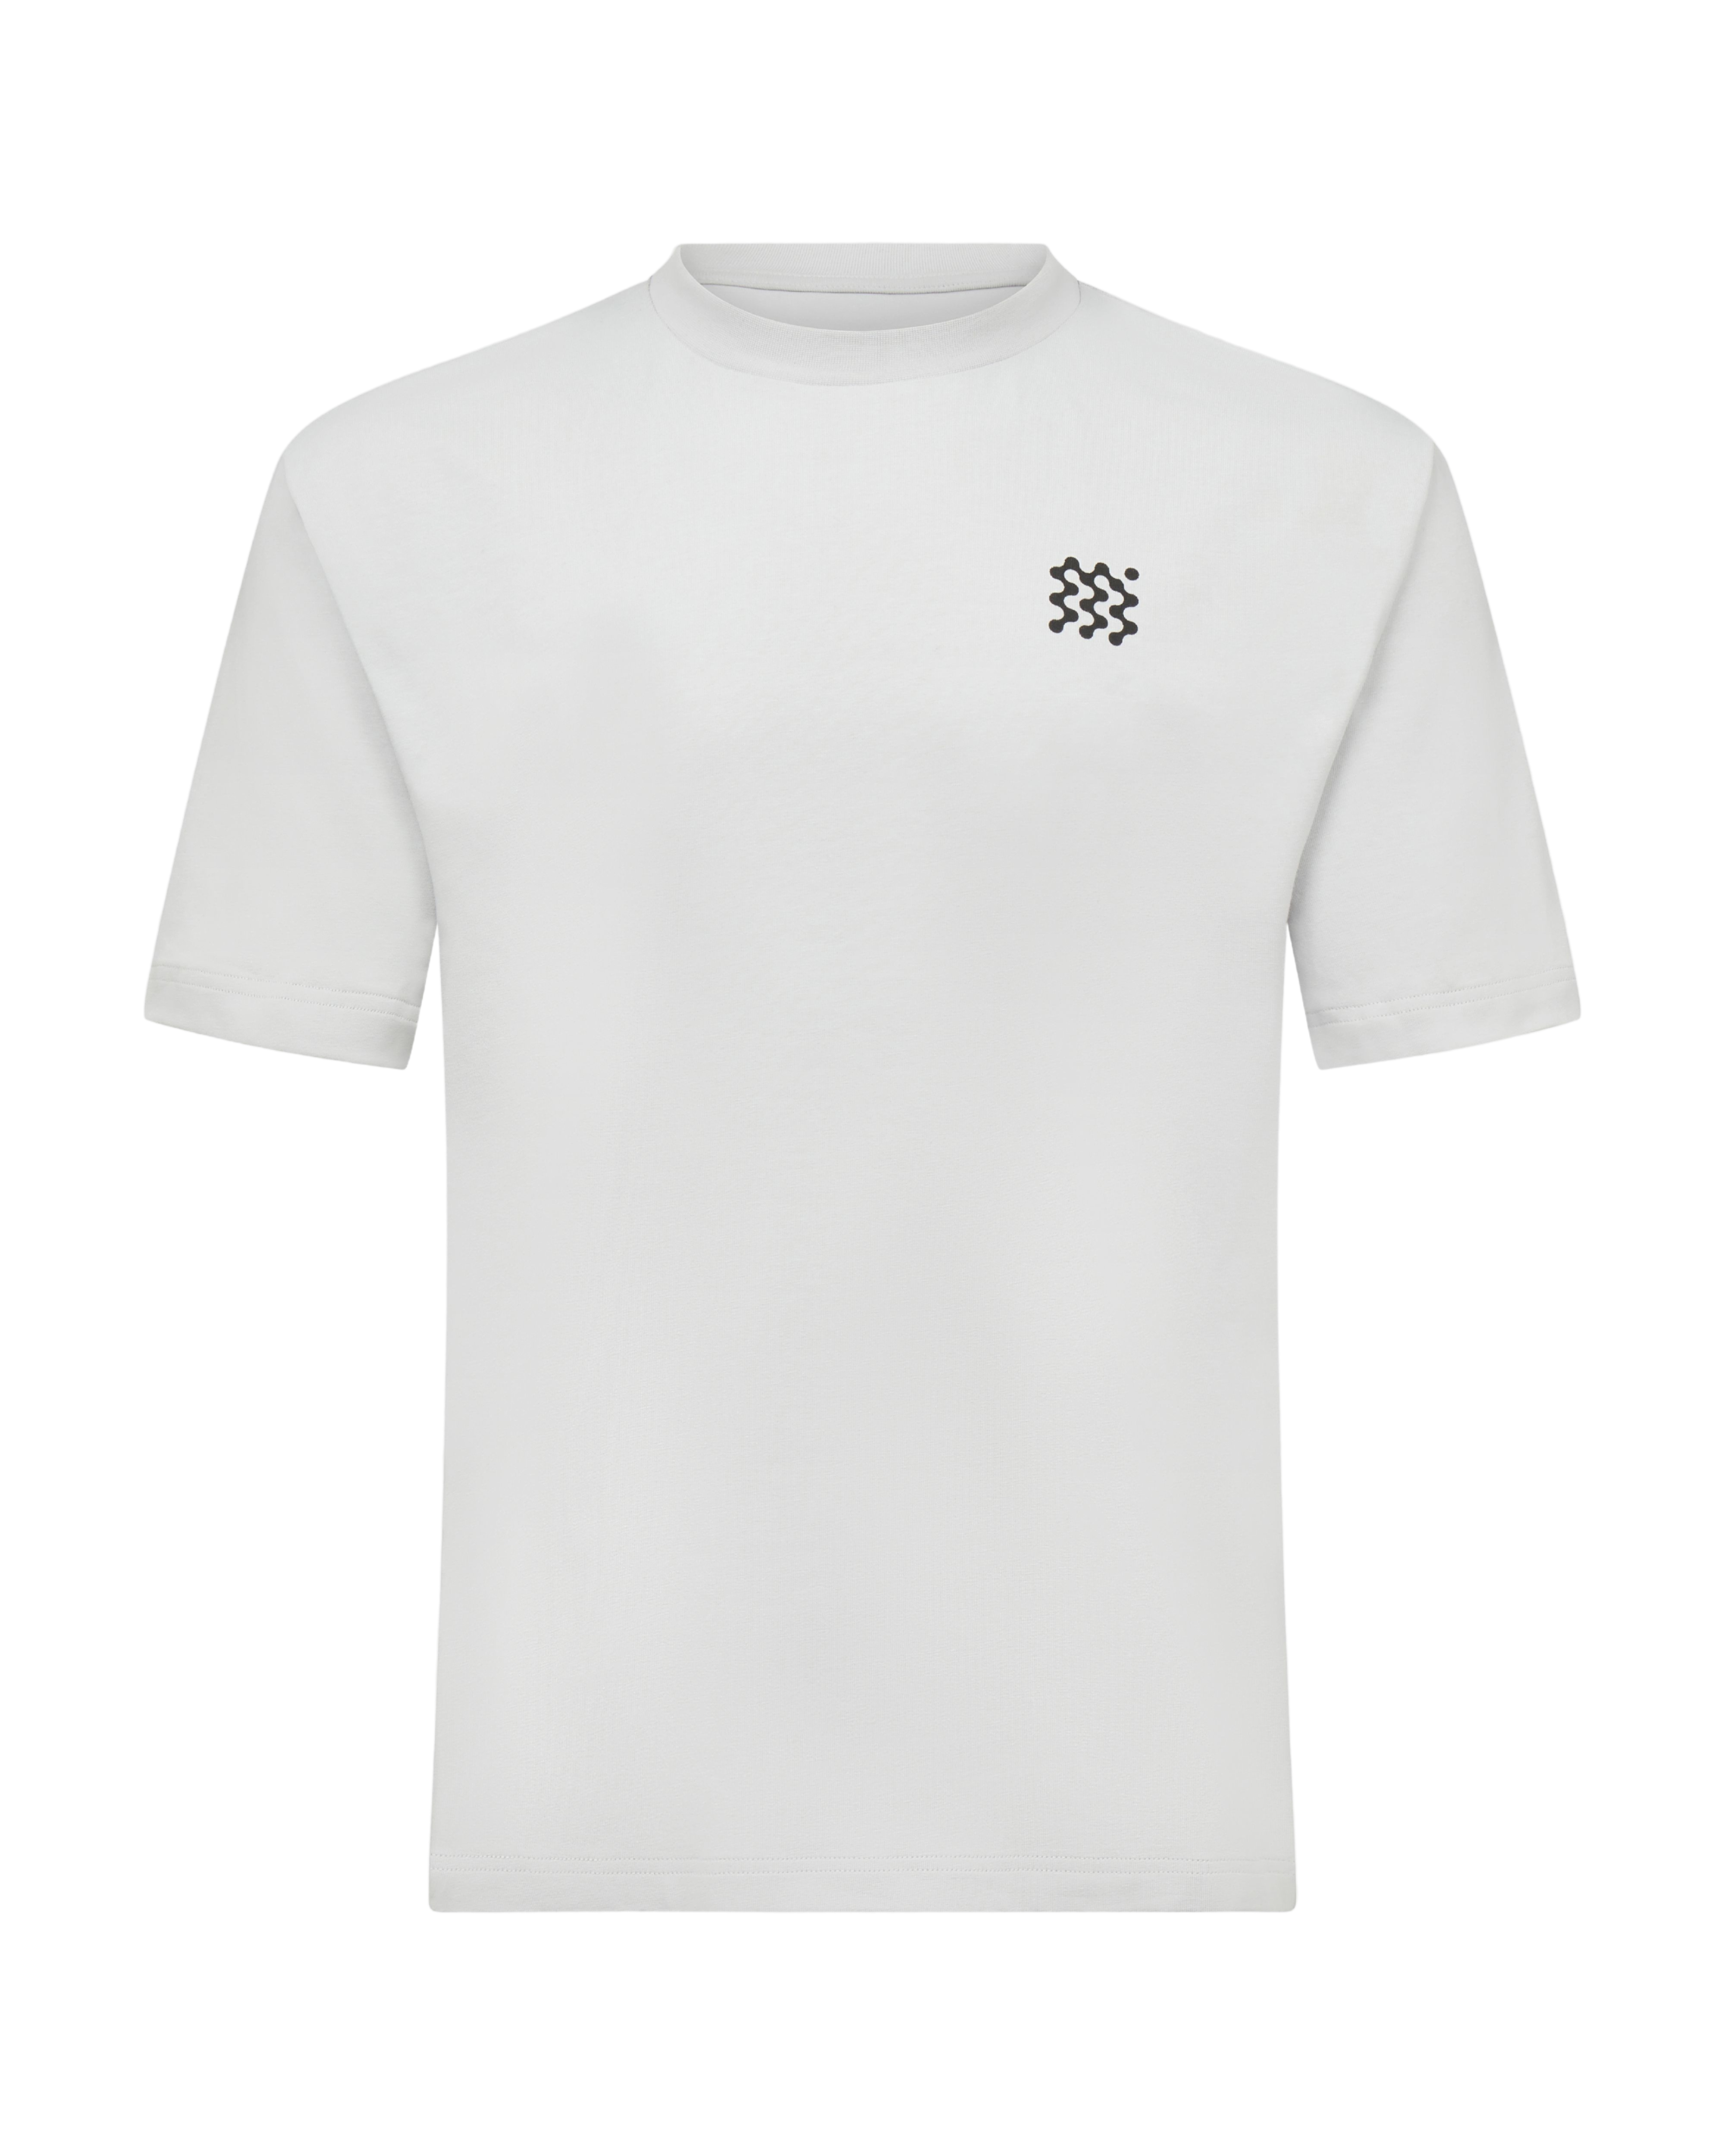 MANORS Men's MGA T-Shirt | golf and sports fashion brands at agorabkk 